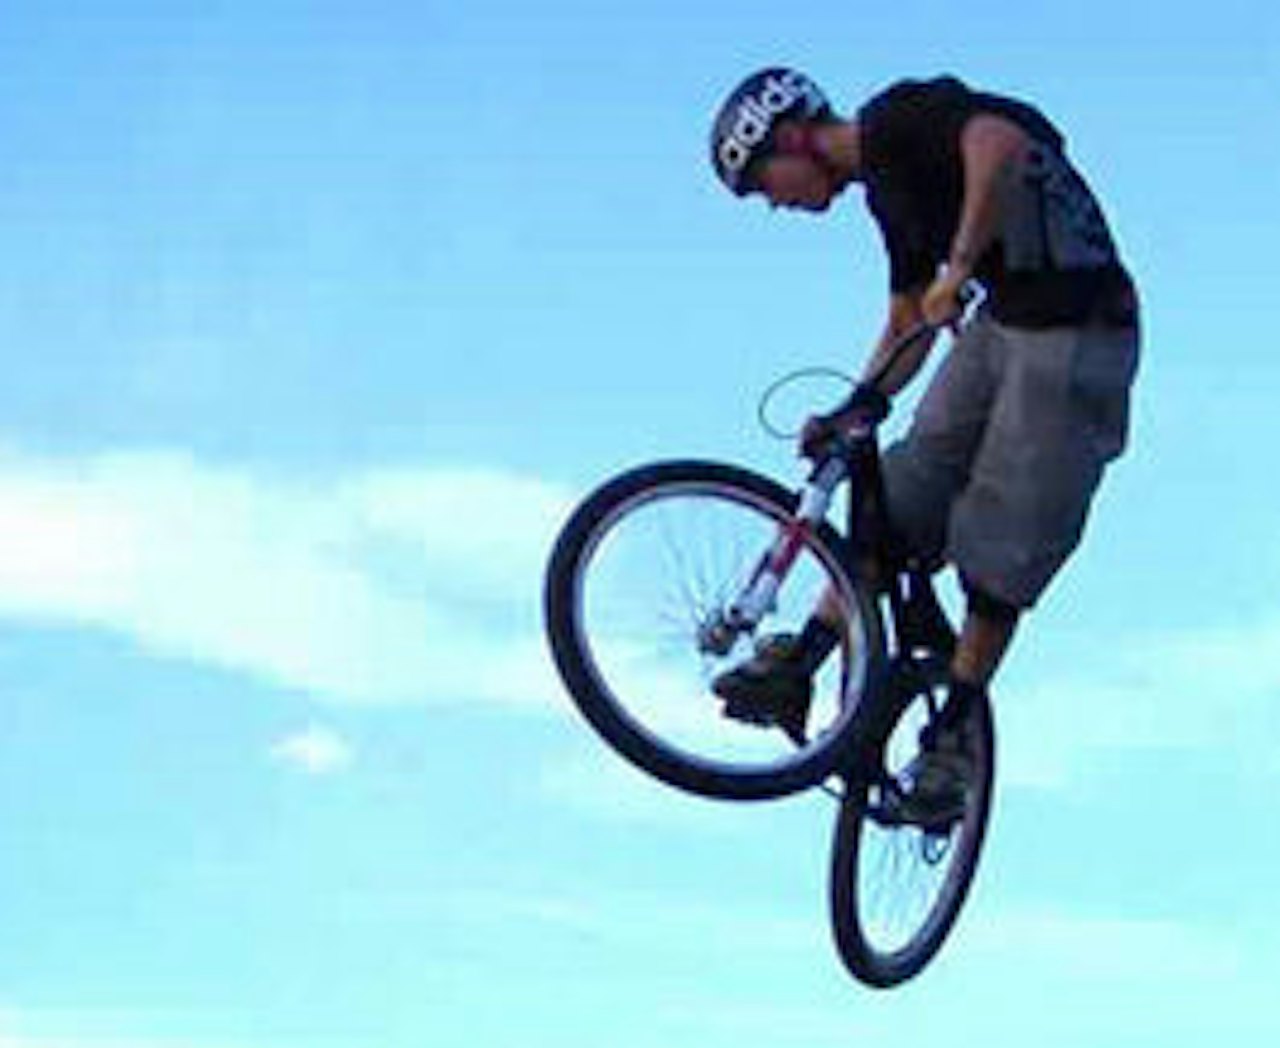 MAKKEN: På ny sykkel har Makken lært seg masse nye triks i høst. Foto: skjermdump